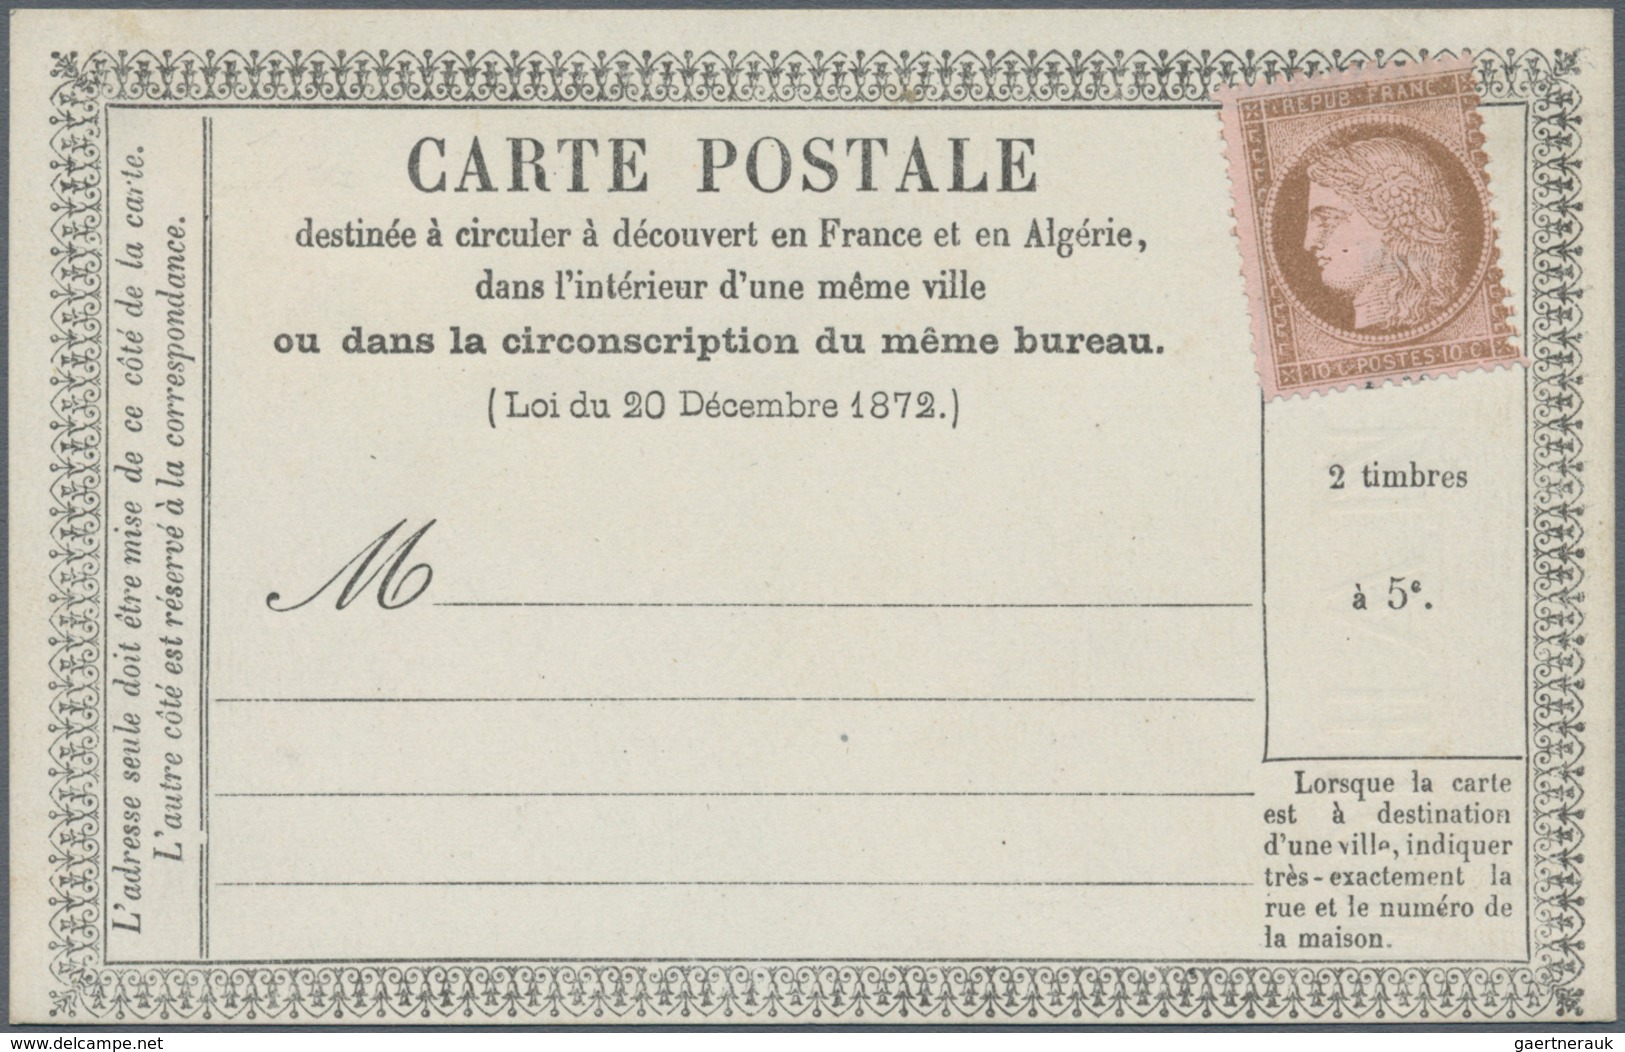 Frankreich: 1873 approx. 40 precursor cards (cartes précuseurs), representing all types, incl. 1A (w